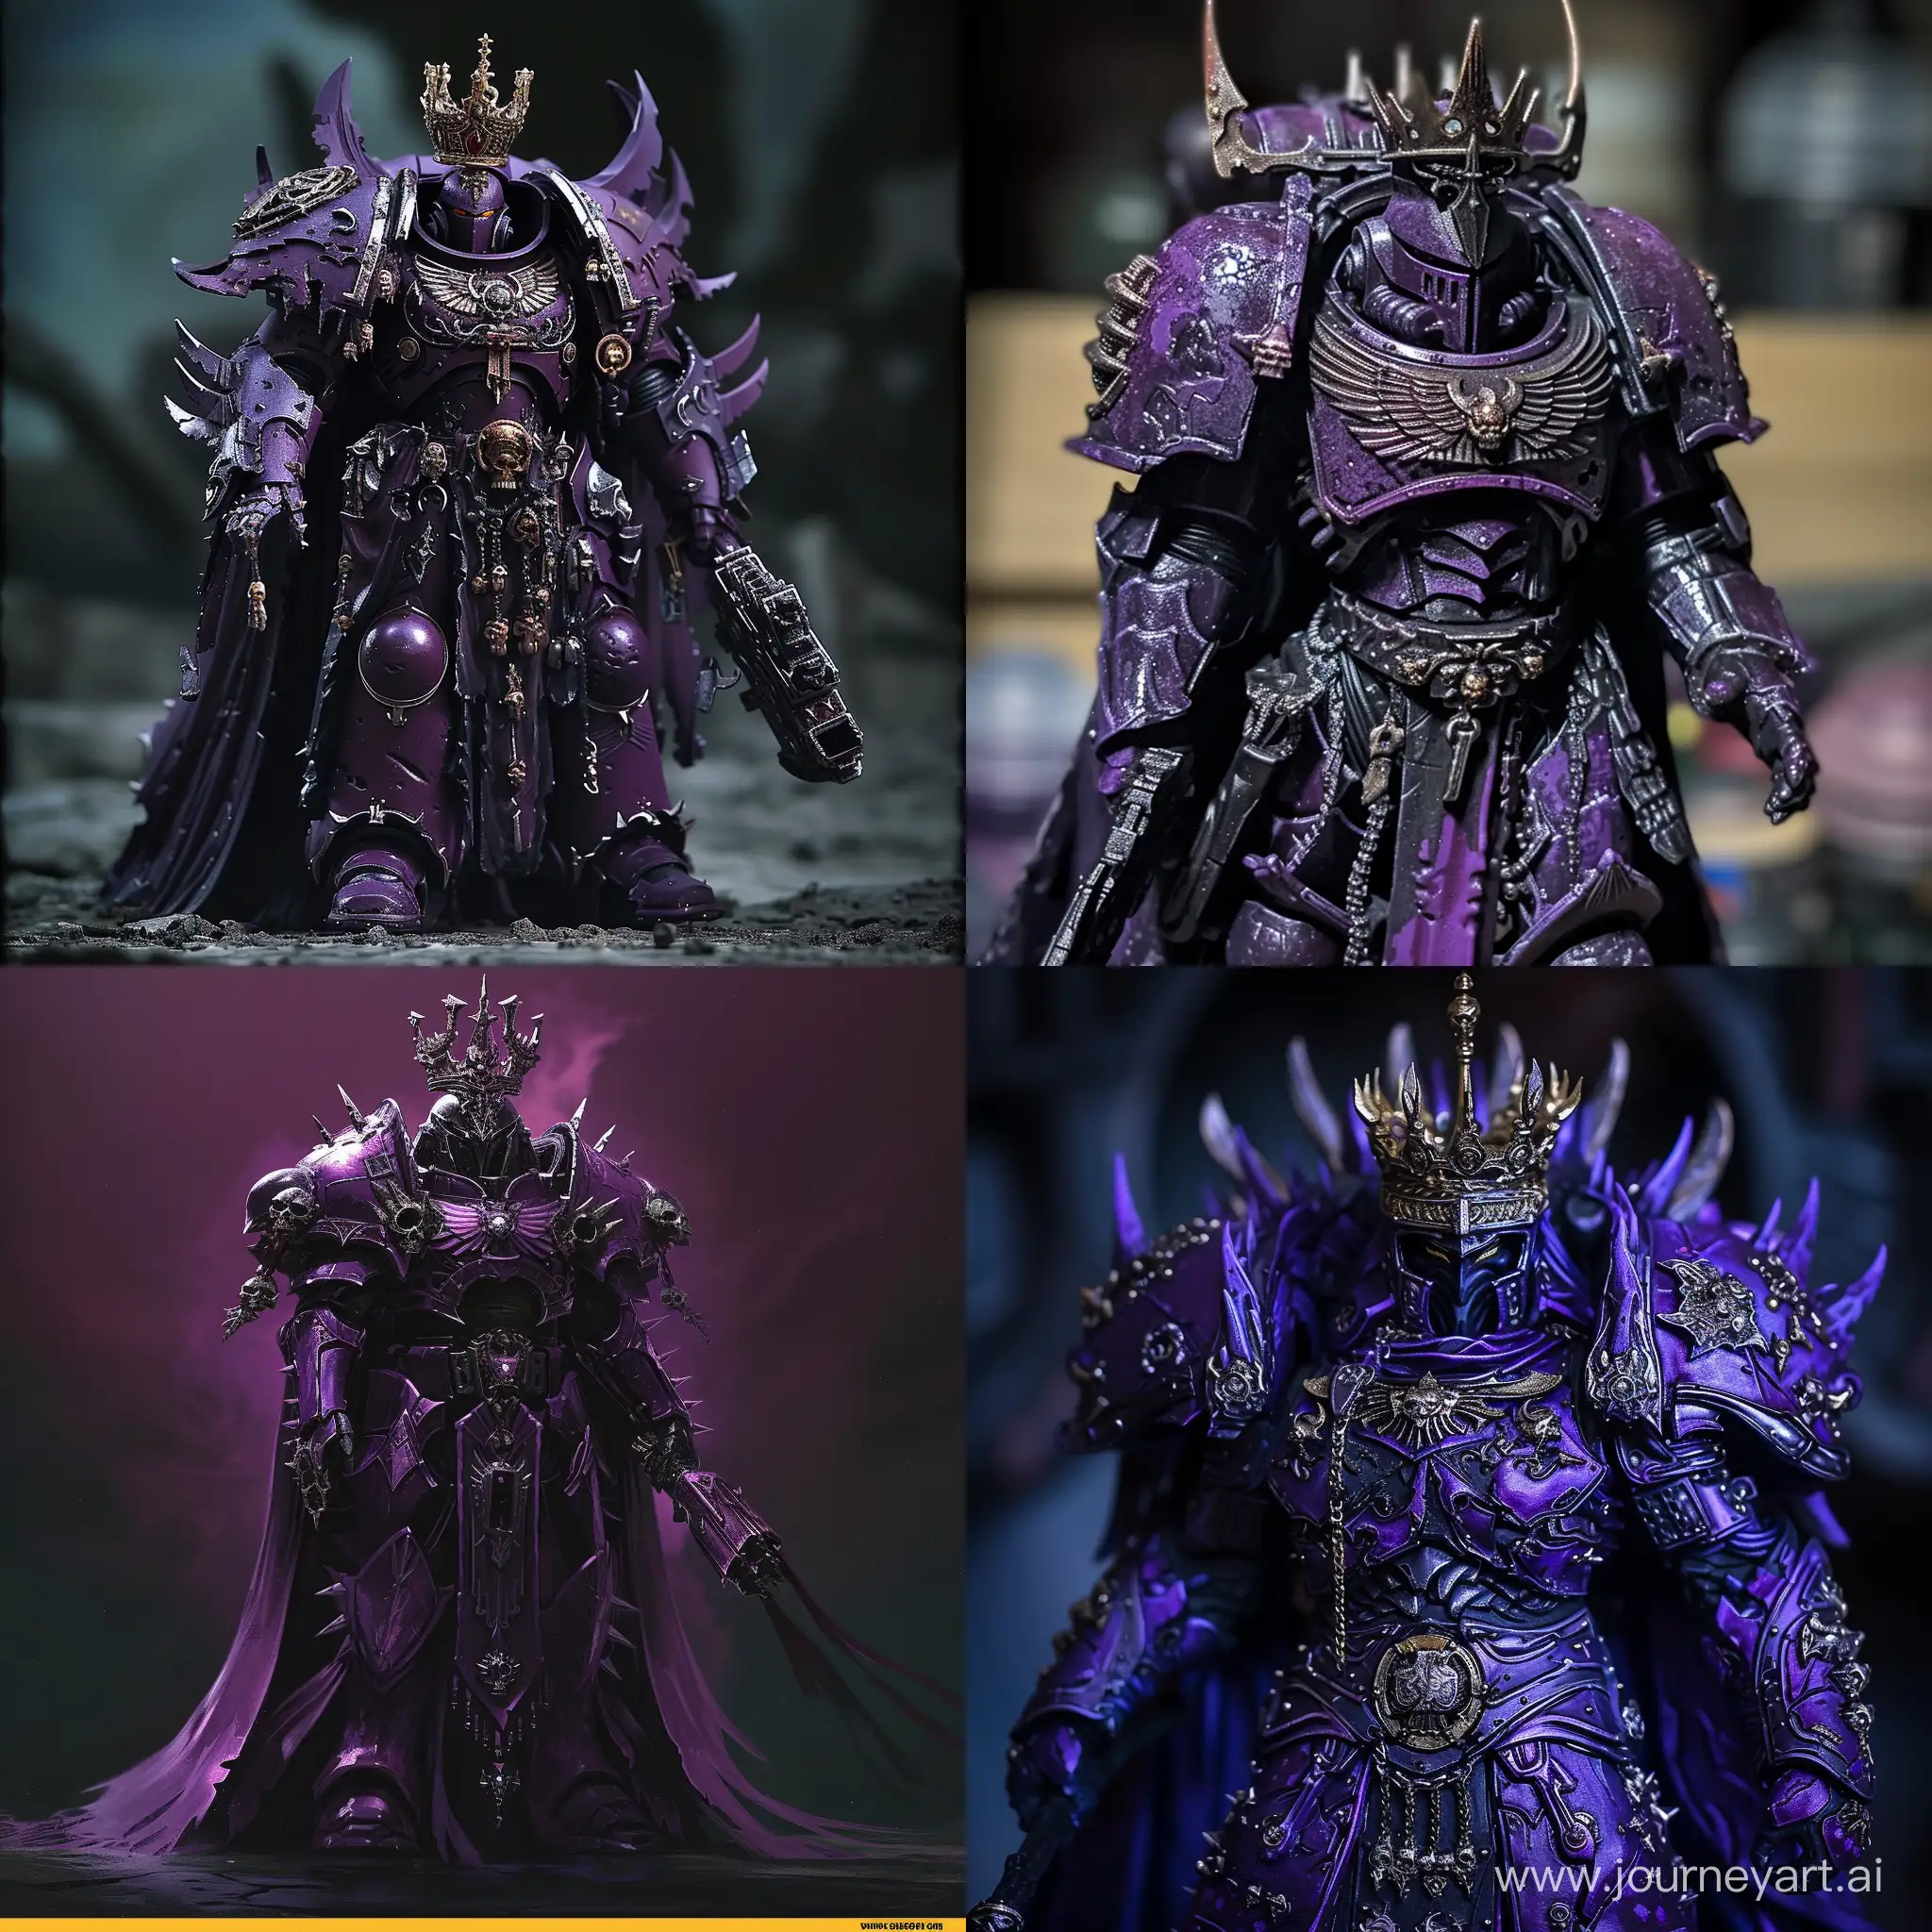 Kyrataz-the-Fallen-Majestic-Eldar-Lord-in-Dark-Purple-Armor